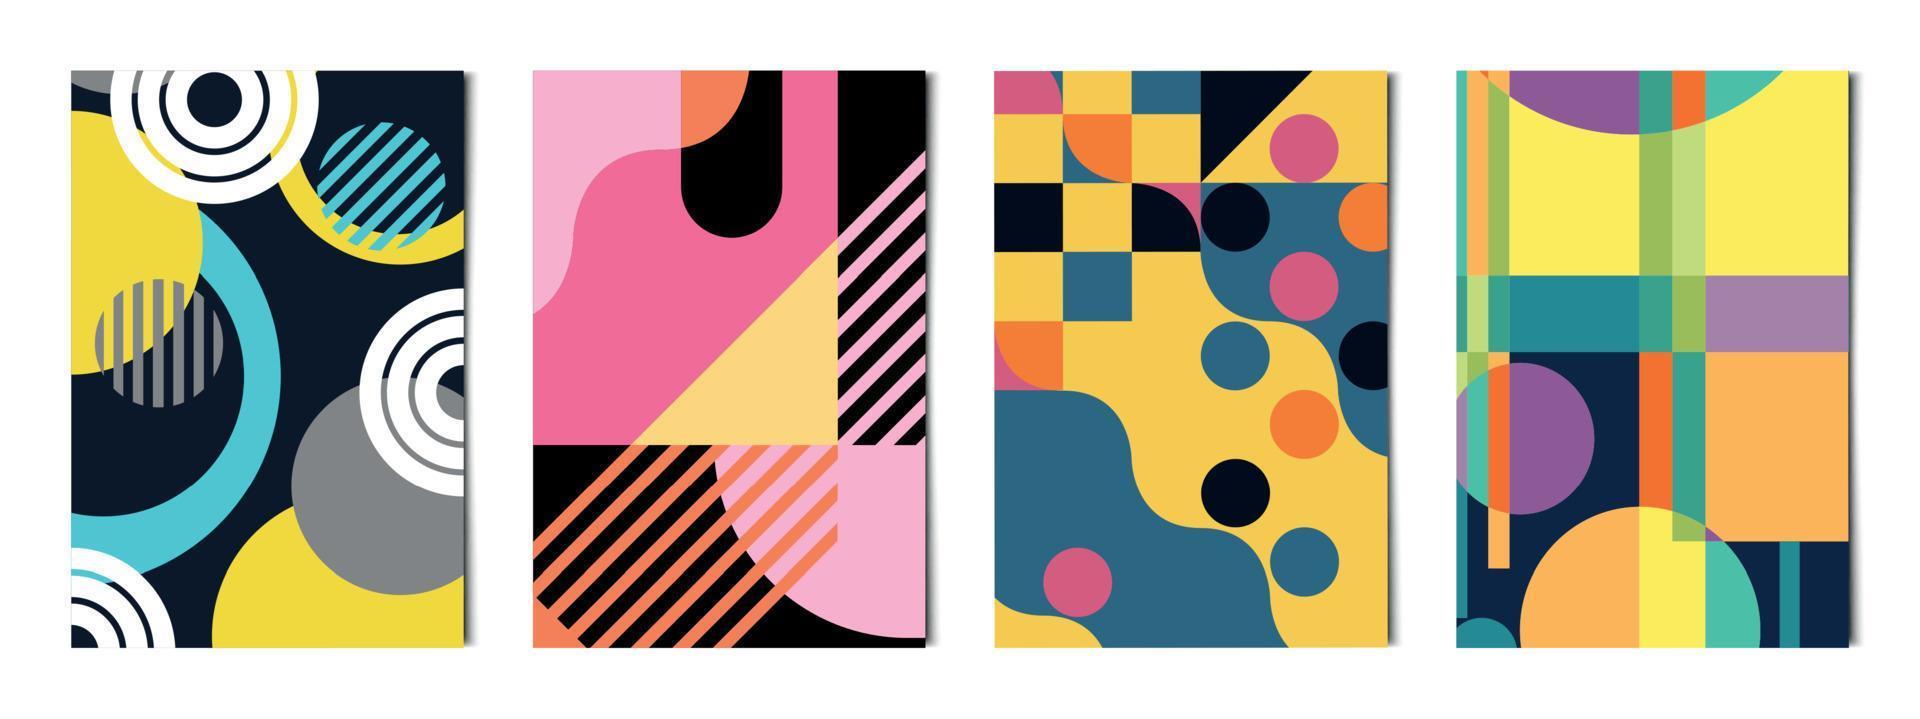 ensemble de 4 pcs formes géométriques abstraites arrière-plans colorés, modèles pour la publicité, cartes de visite, textures - vecteur